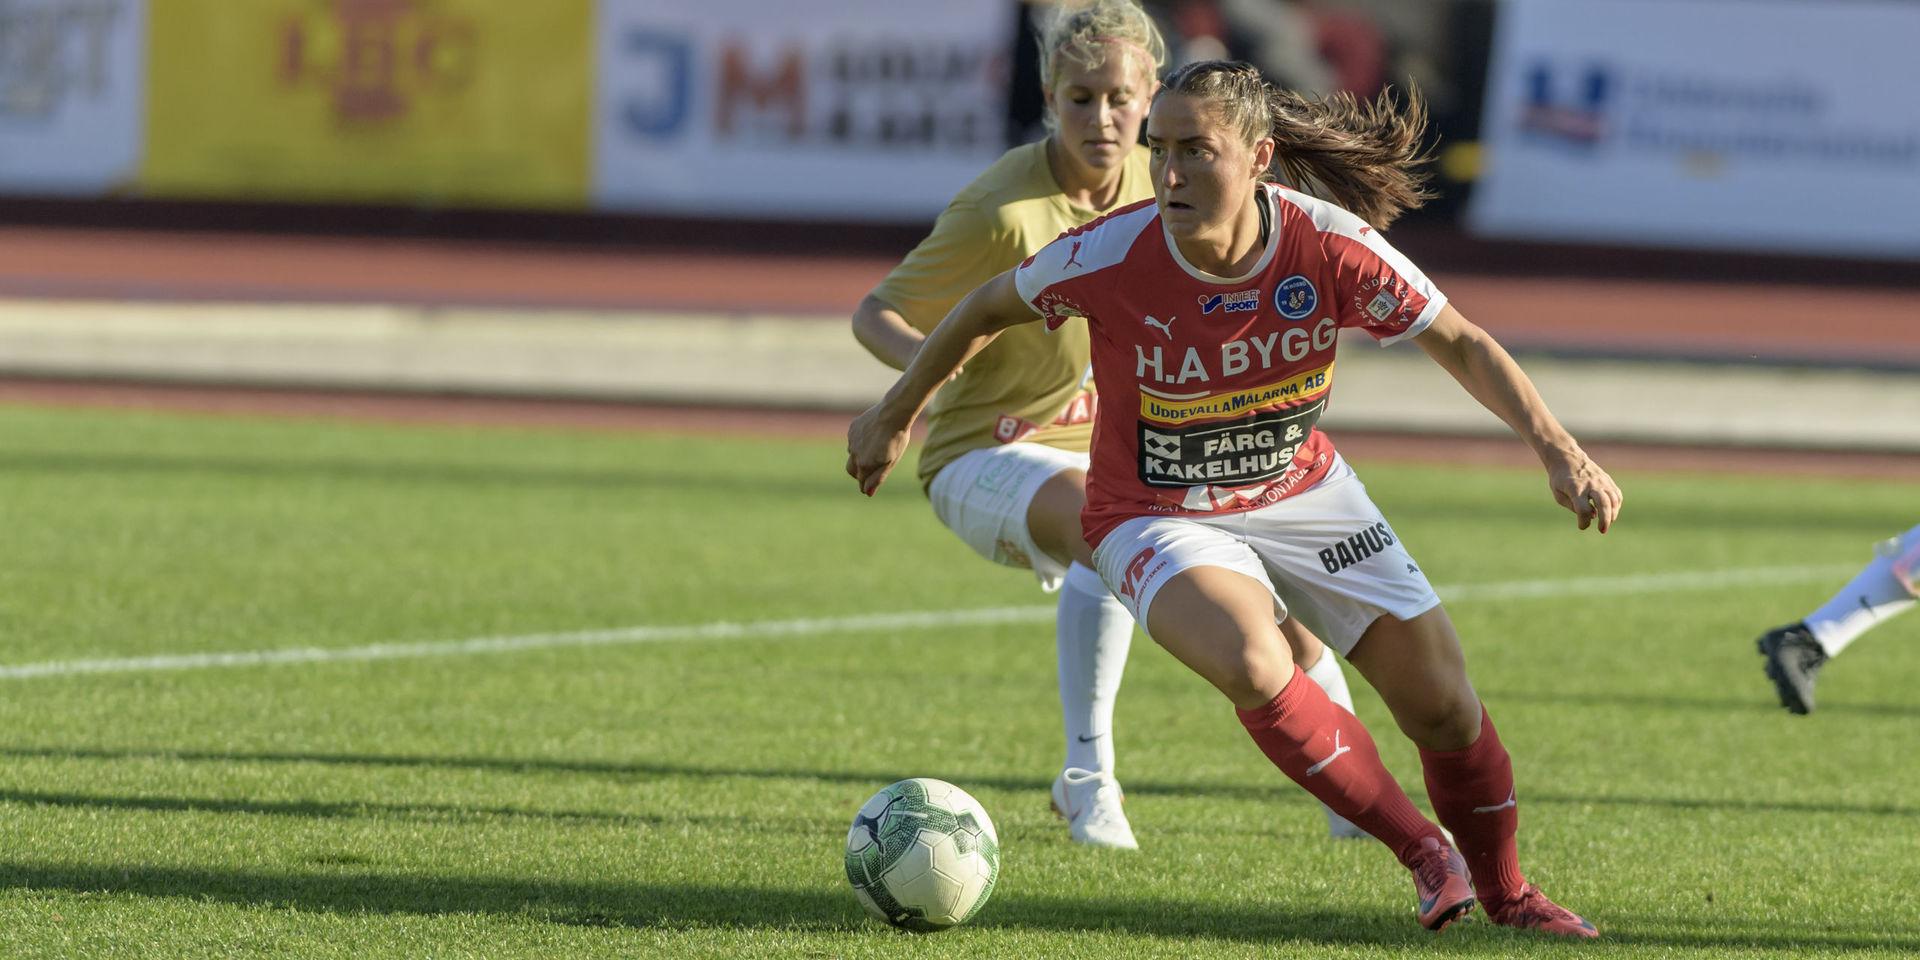 Irvina Bajramovic, Rössös bästa målskytt under 2018, fick inte till sina avslut i den första kvalmatchen mot Brommapojkarna.